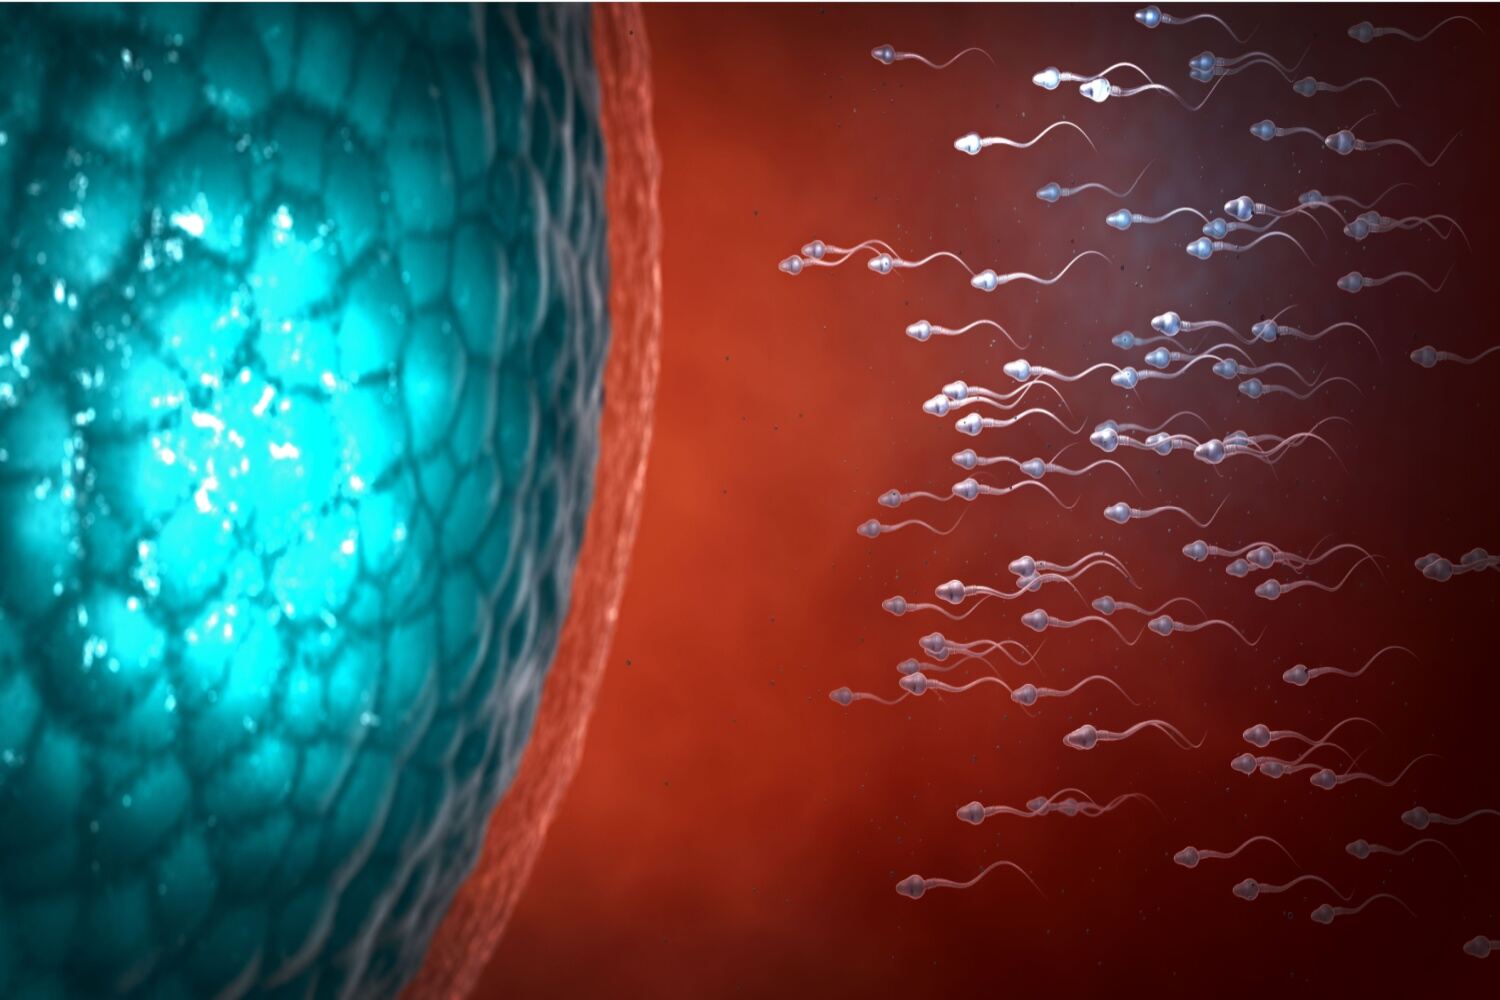 Sperm and ovum